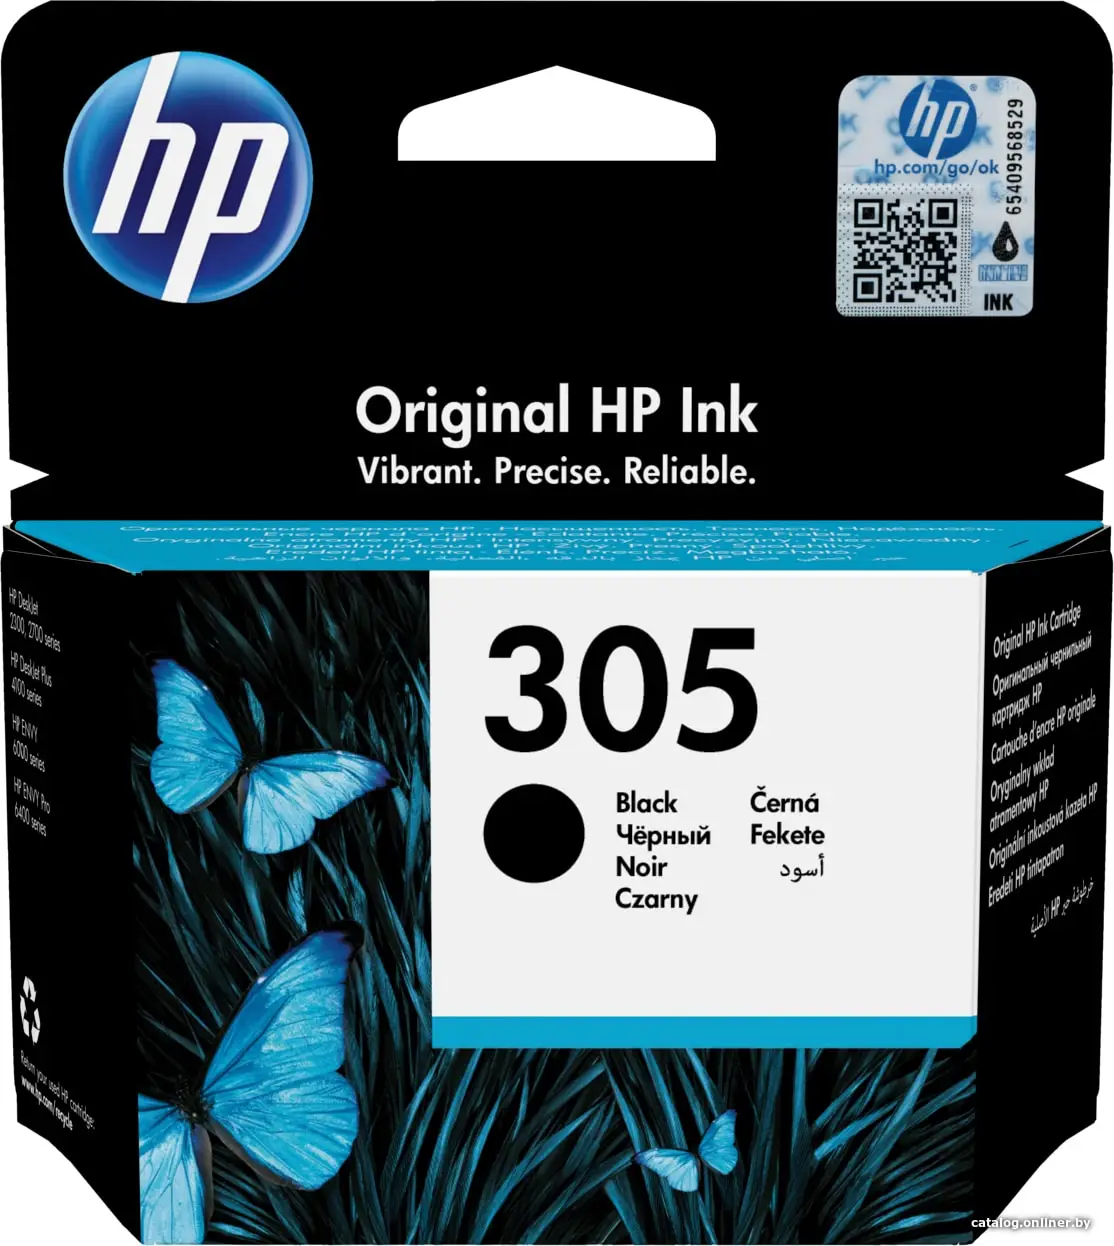 Купить HP 305 Black Original Ink Cartridge картридж, цена, опт и розница